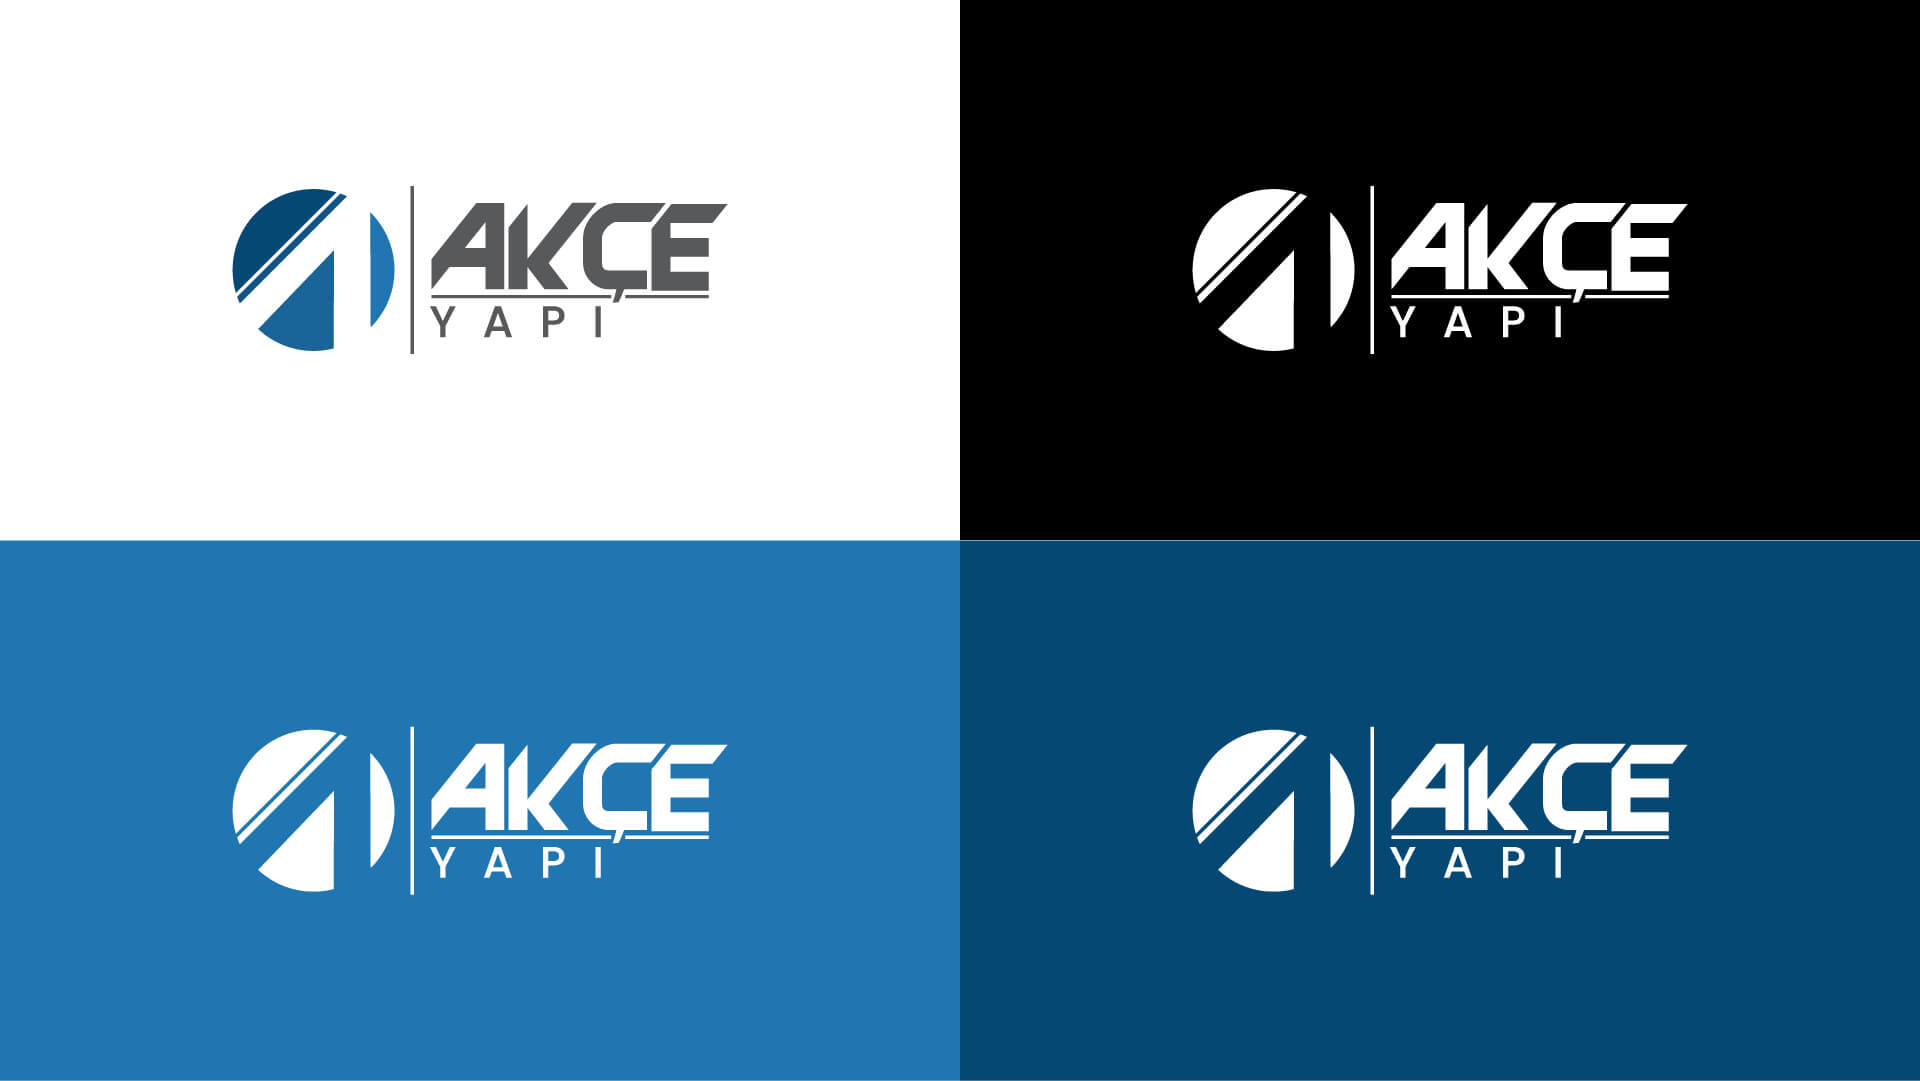 akce-yapi-logo-2